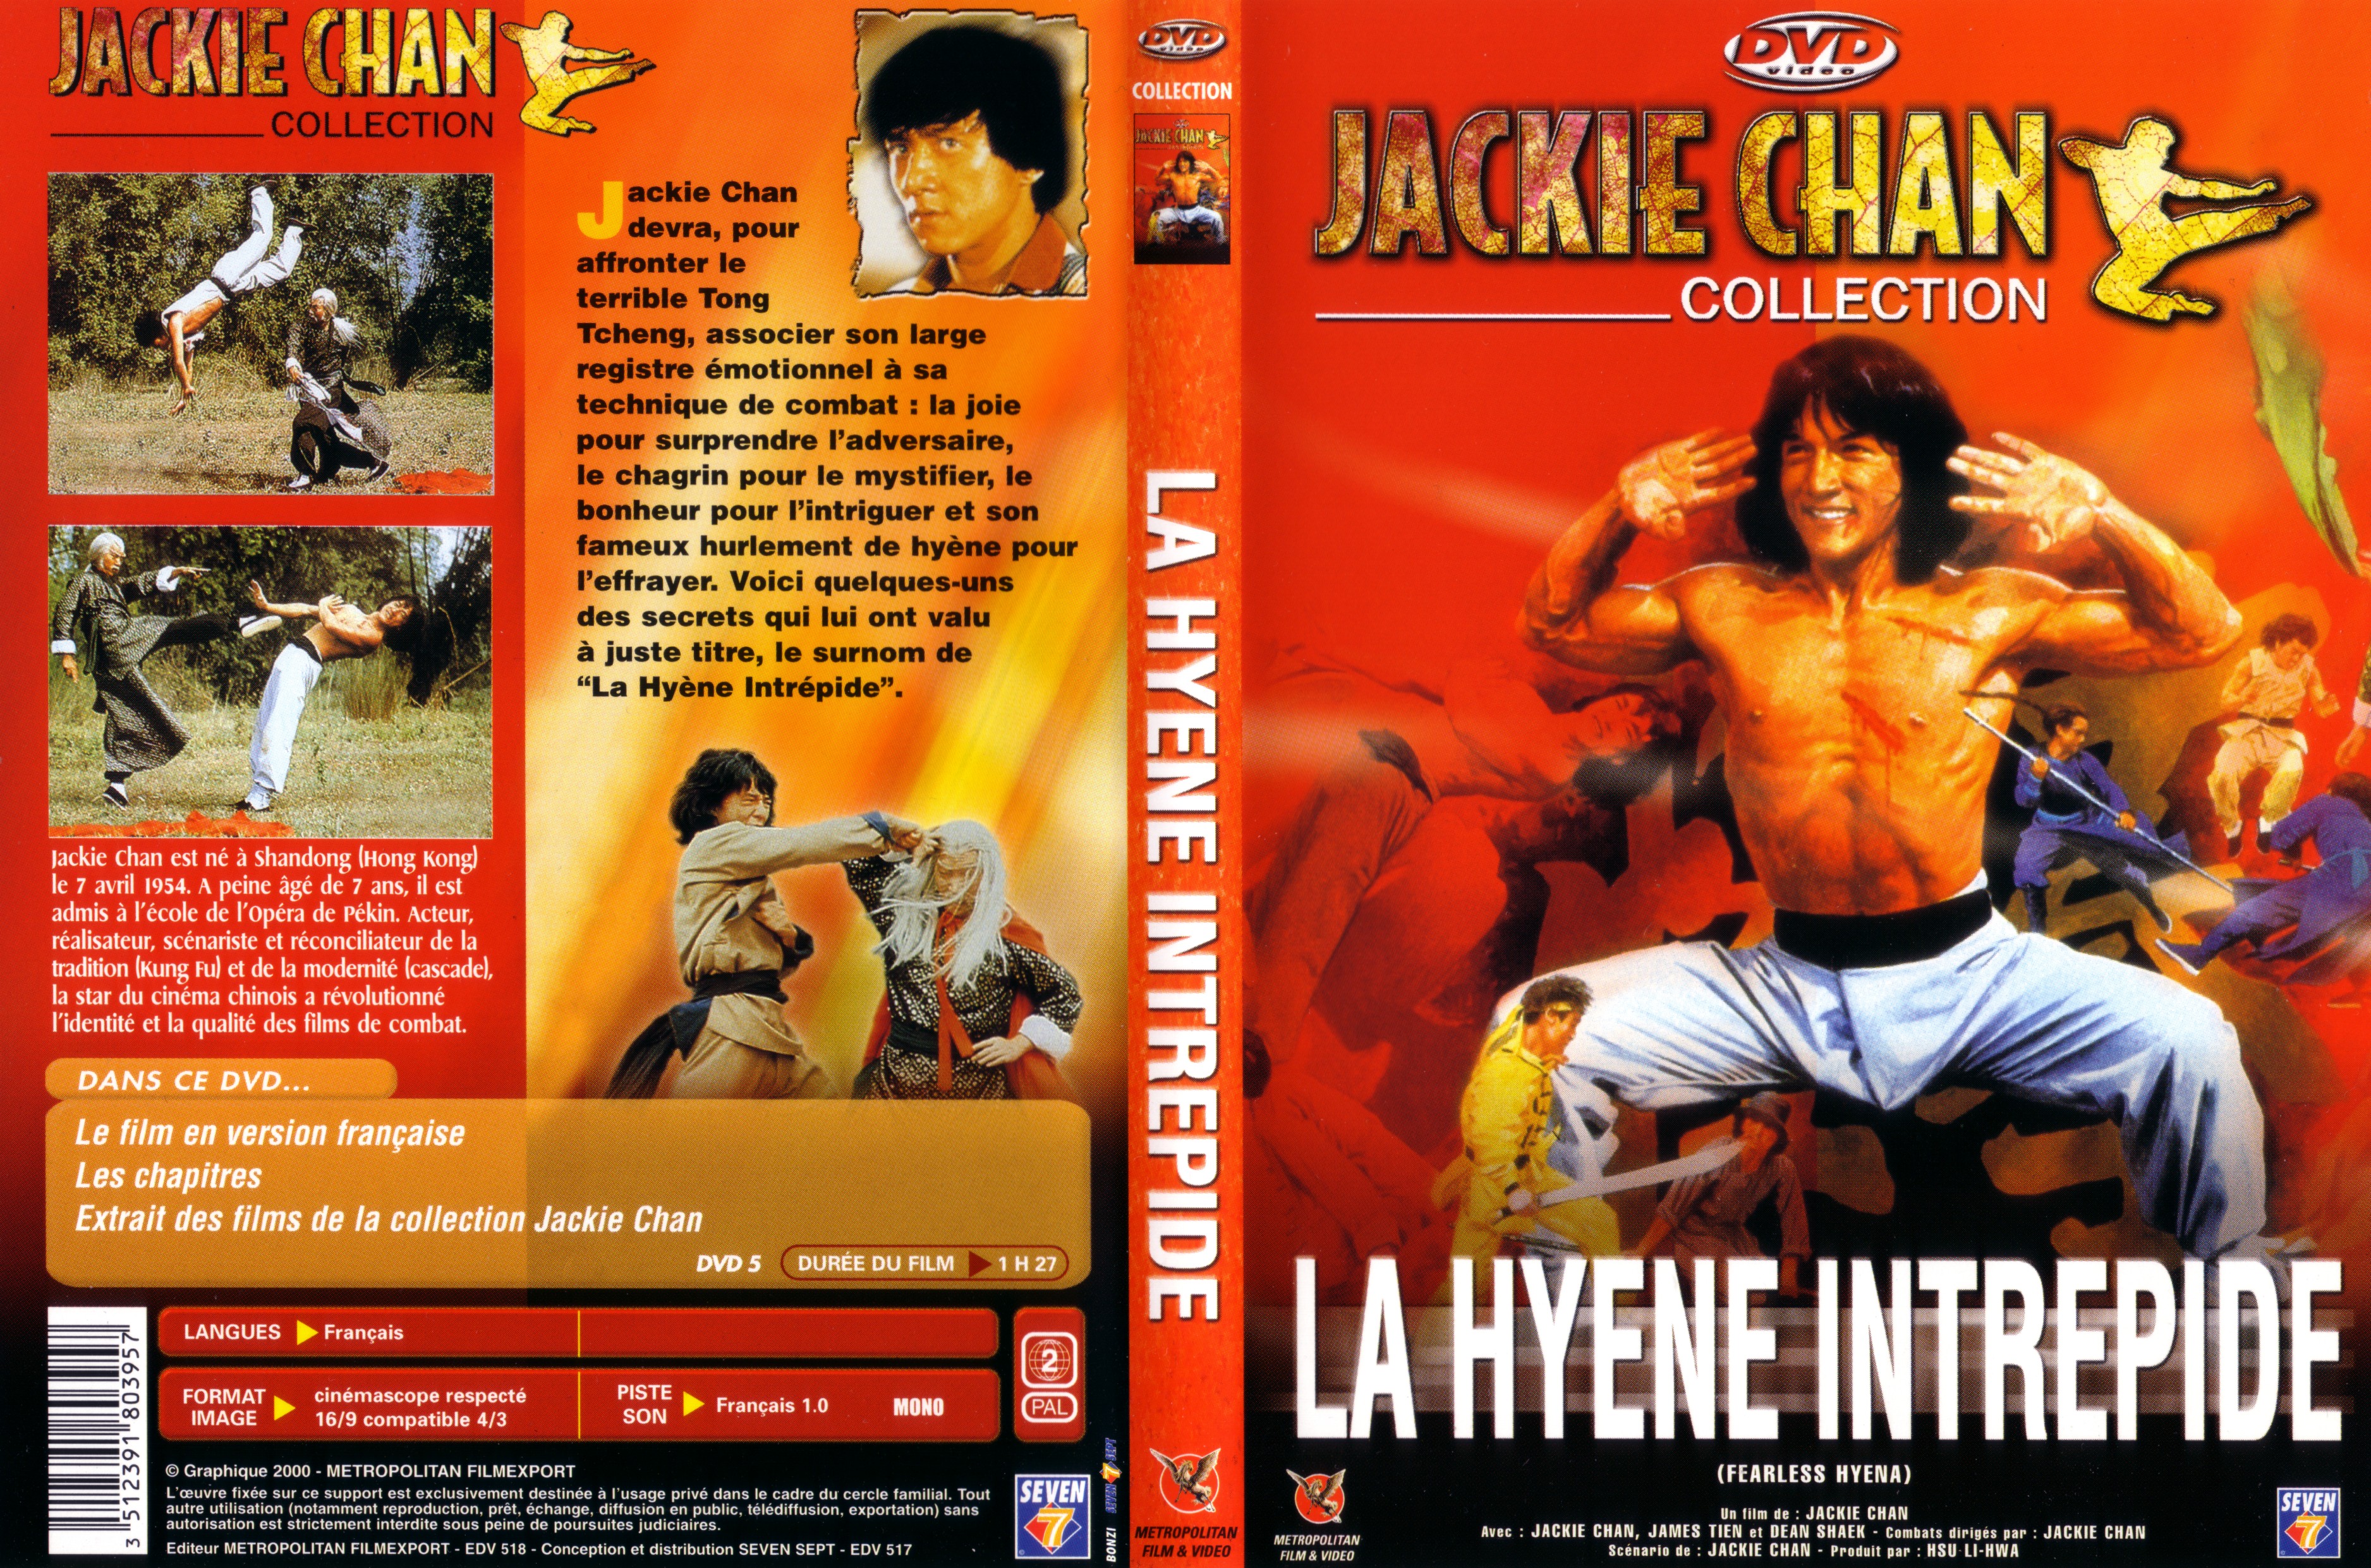 Jaquette DVD La hyne intrpide v3